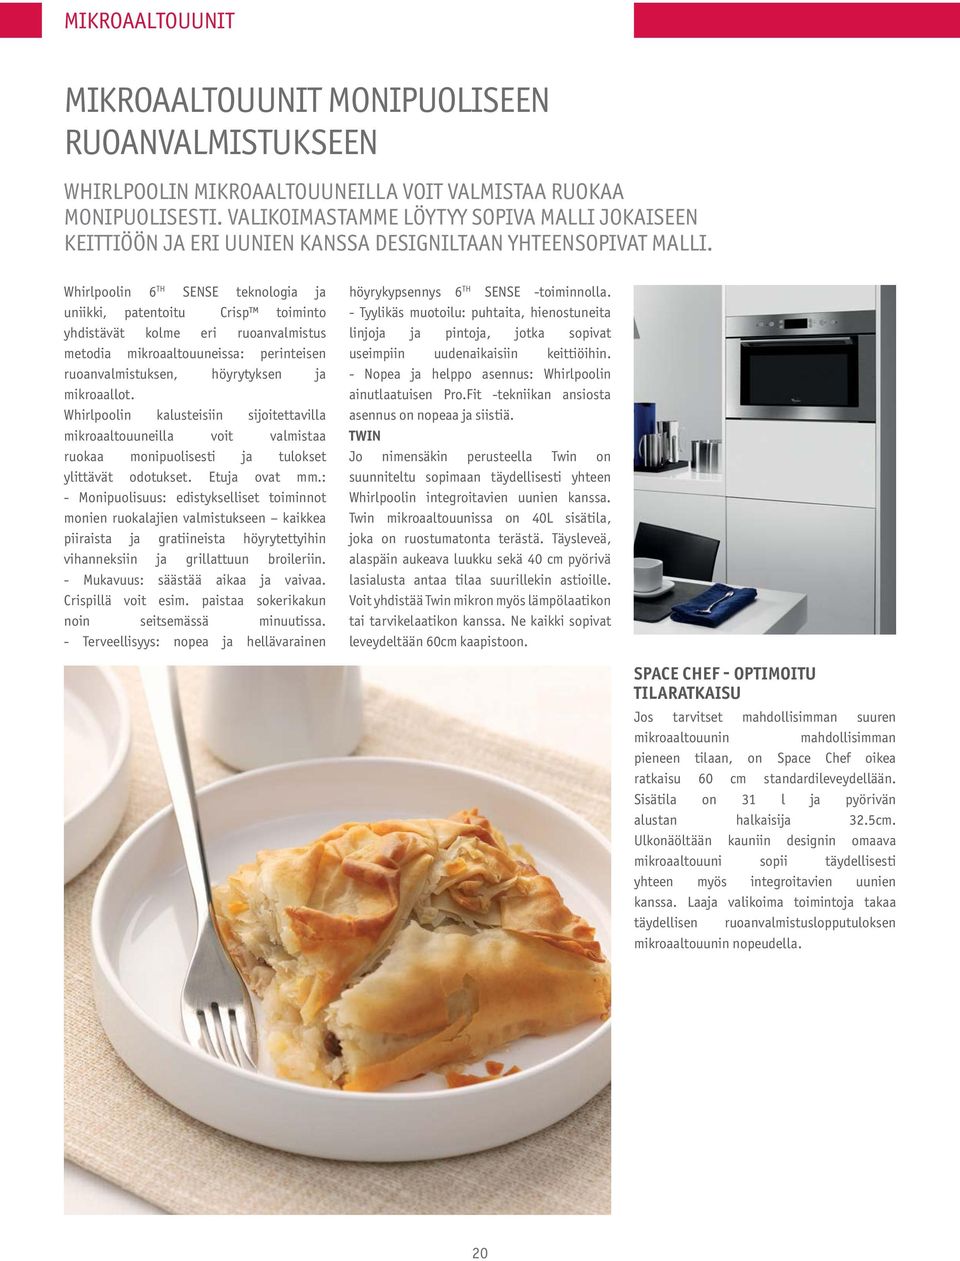 Whirlpoolin 6TH SENSE teknologia ja uniikki, patentoitu Crisp toiminto yhdistävät kolme eri ruoanvalmistus metodia mikroaaltouuneissa : perinteisen ruoanvalmistuksen, höyrytyksen ja mikroaallot.